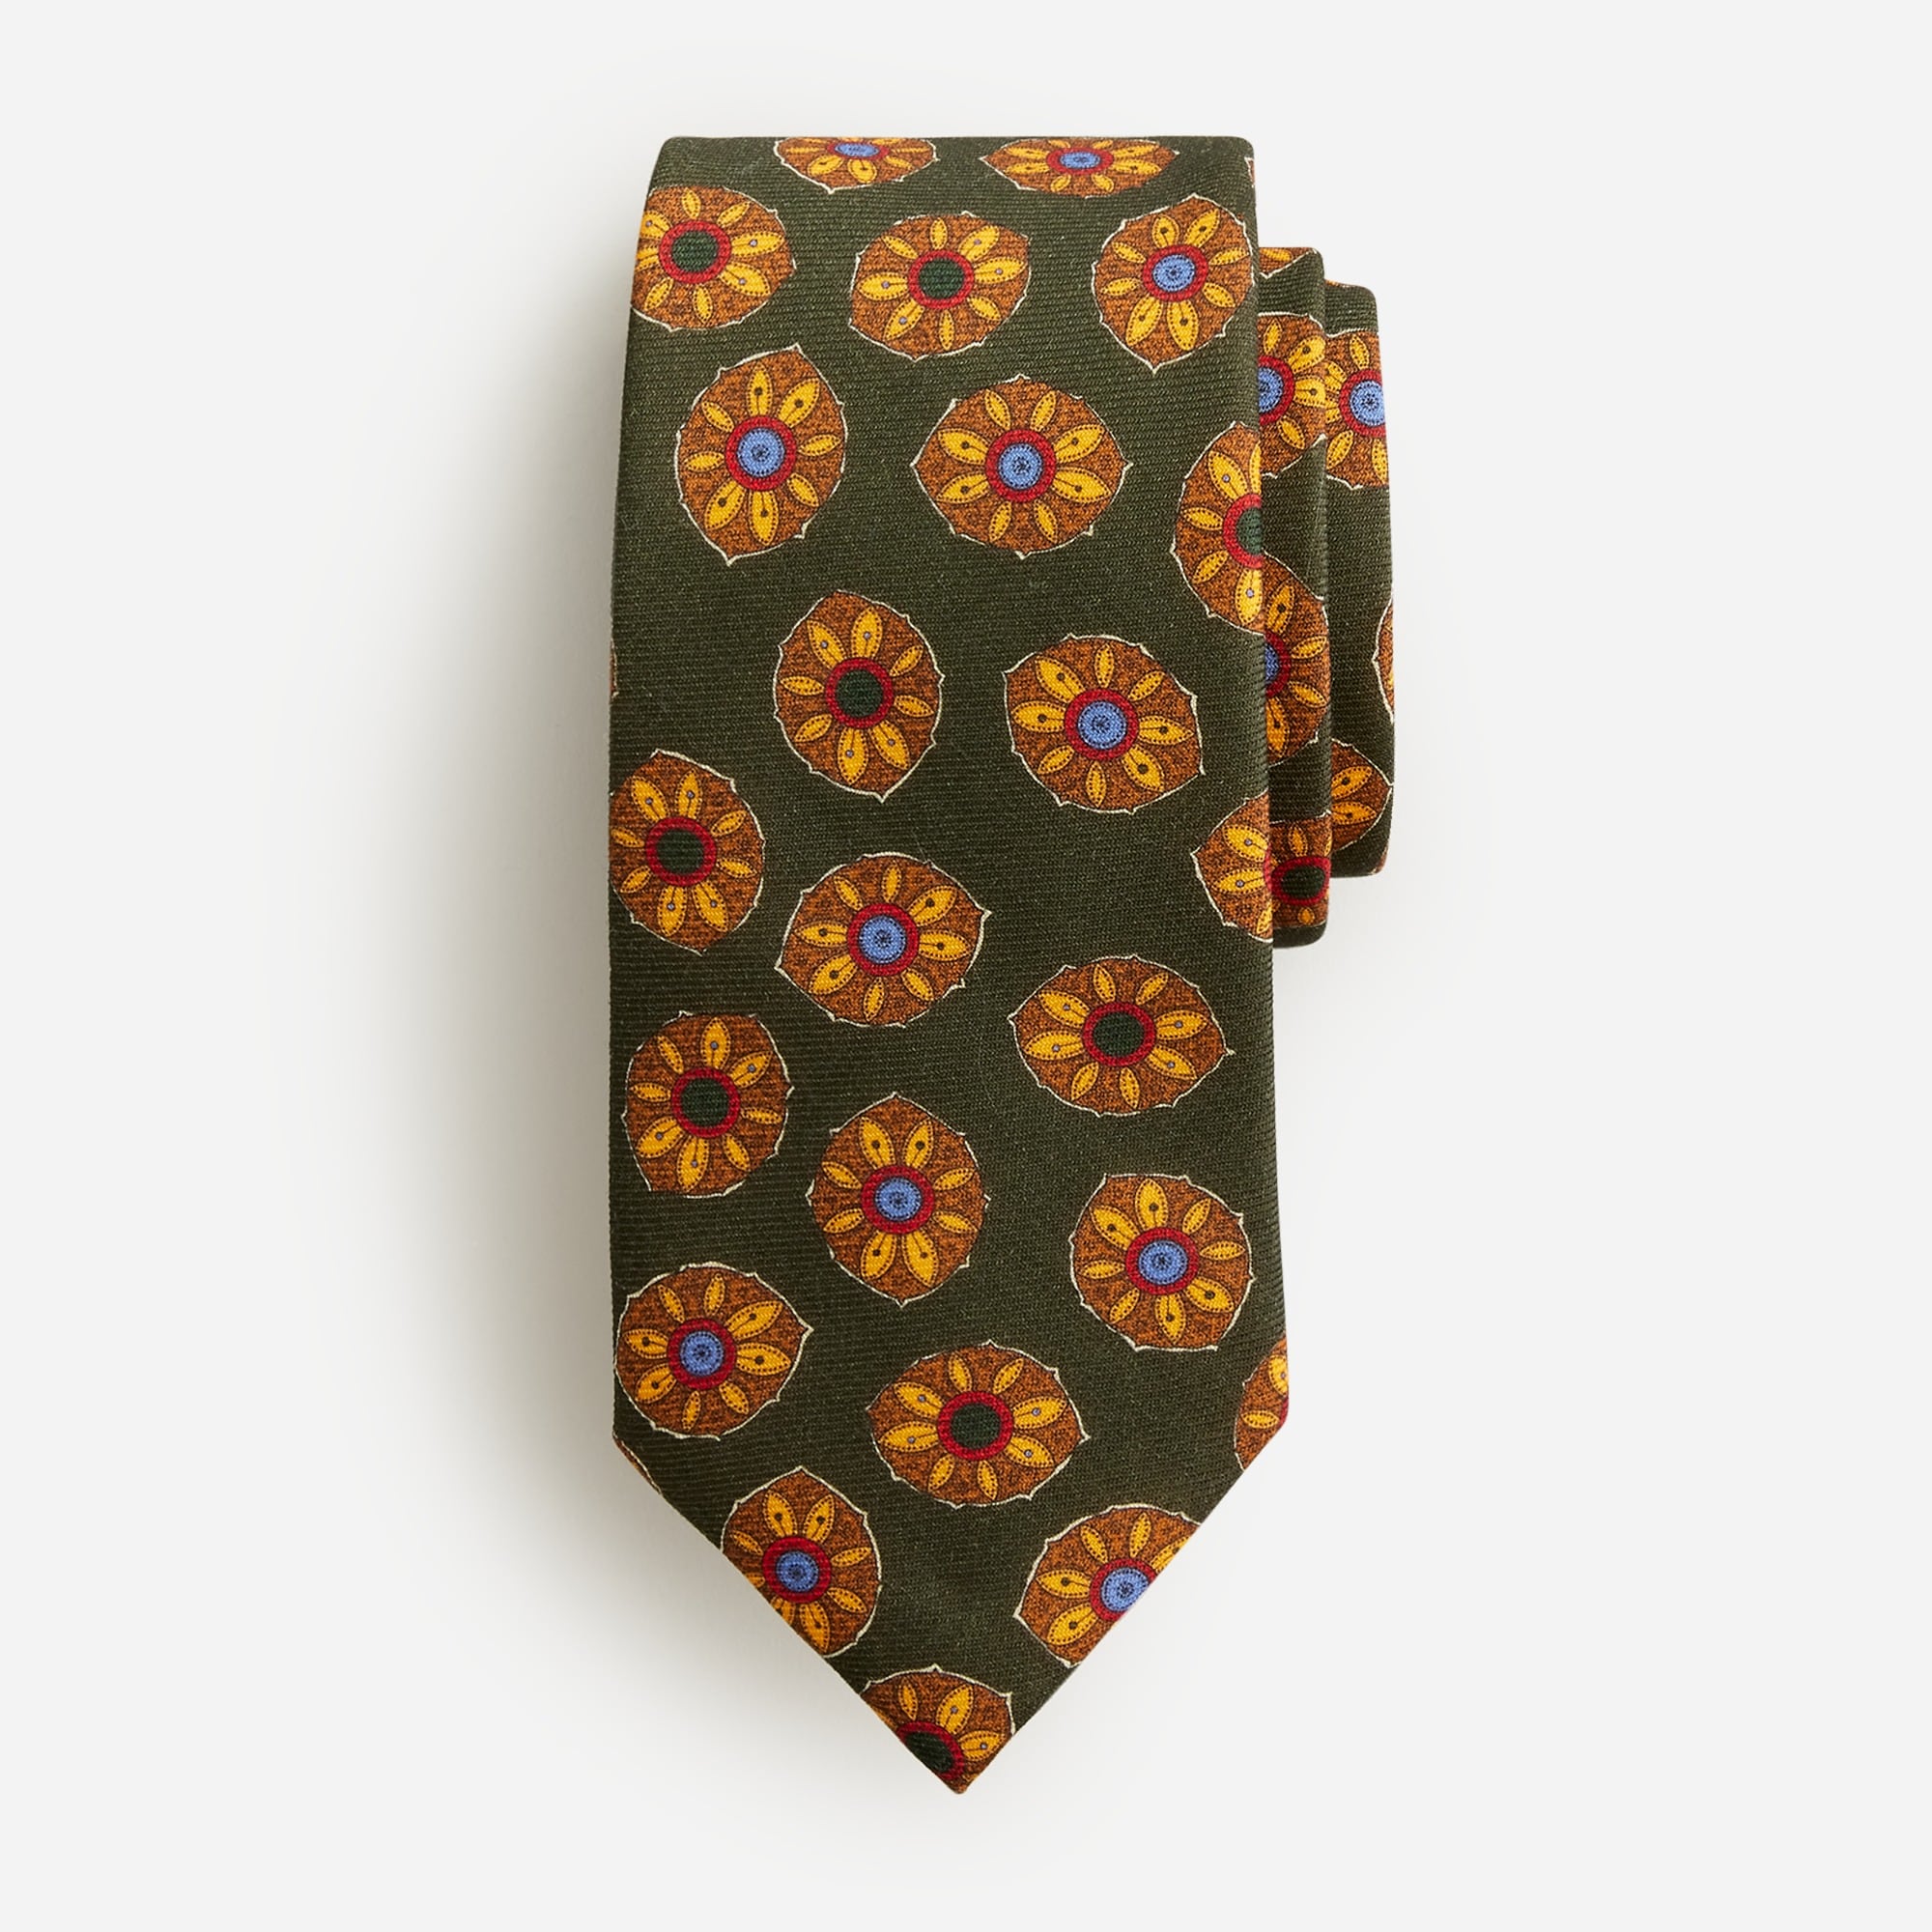  Wool challis tie in sunflower print